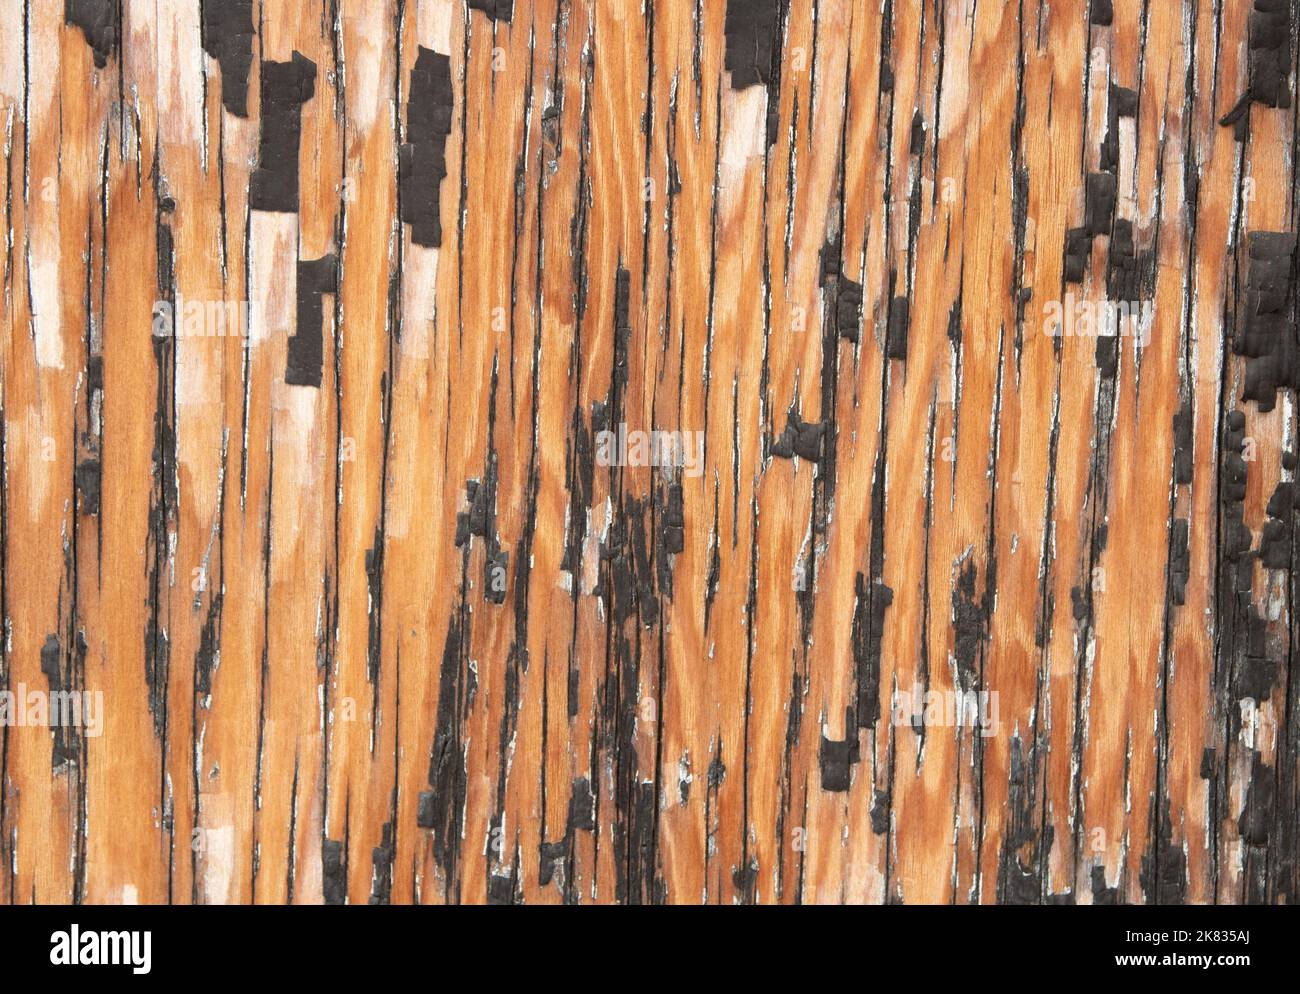 Detalle Rústico de pintura descascarada negra desgastada en la pared de madera contrachapada Foto de stock